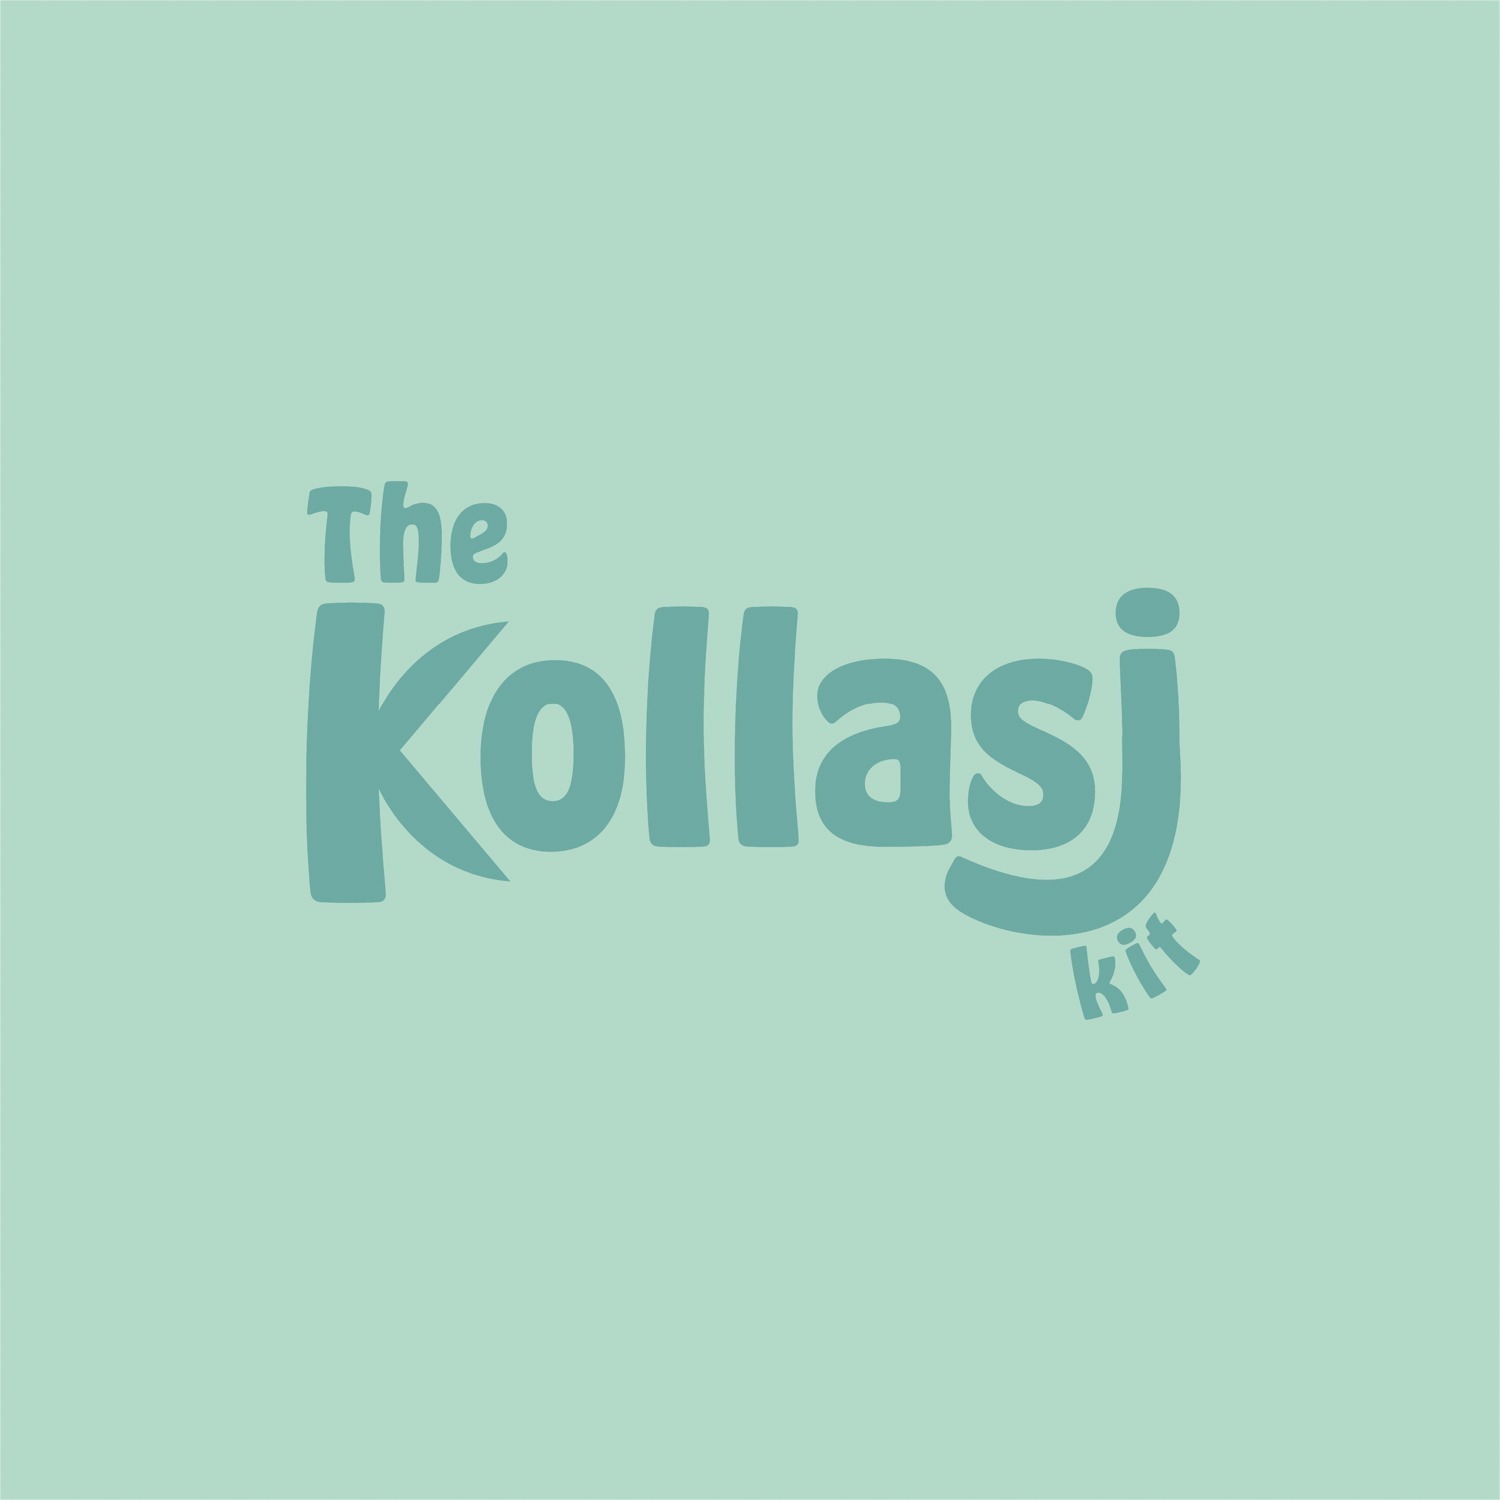 Logo for the Kollasj kit